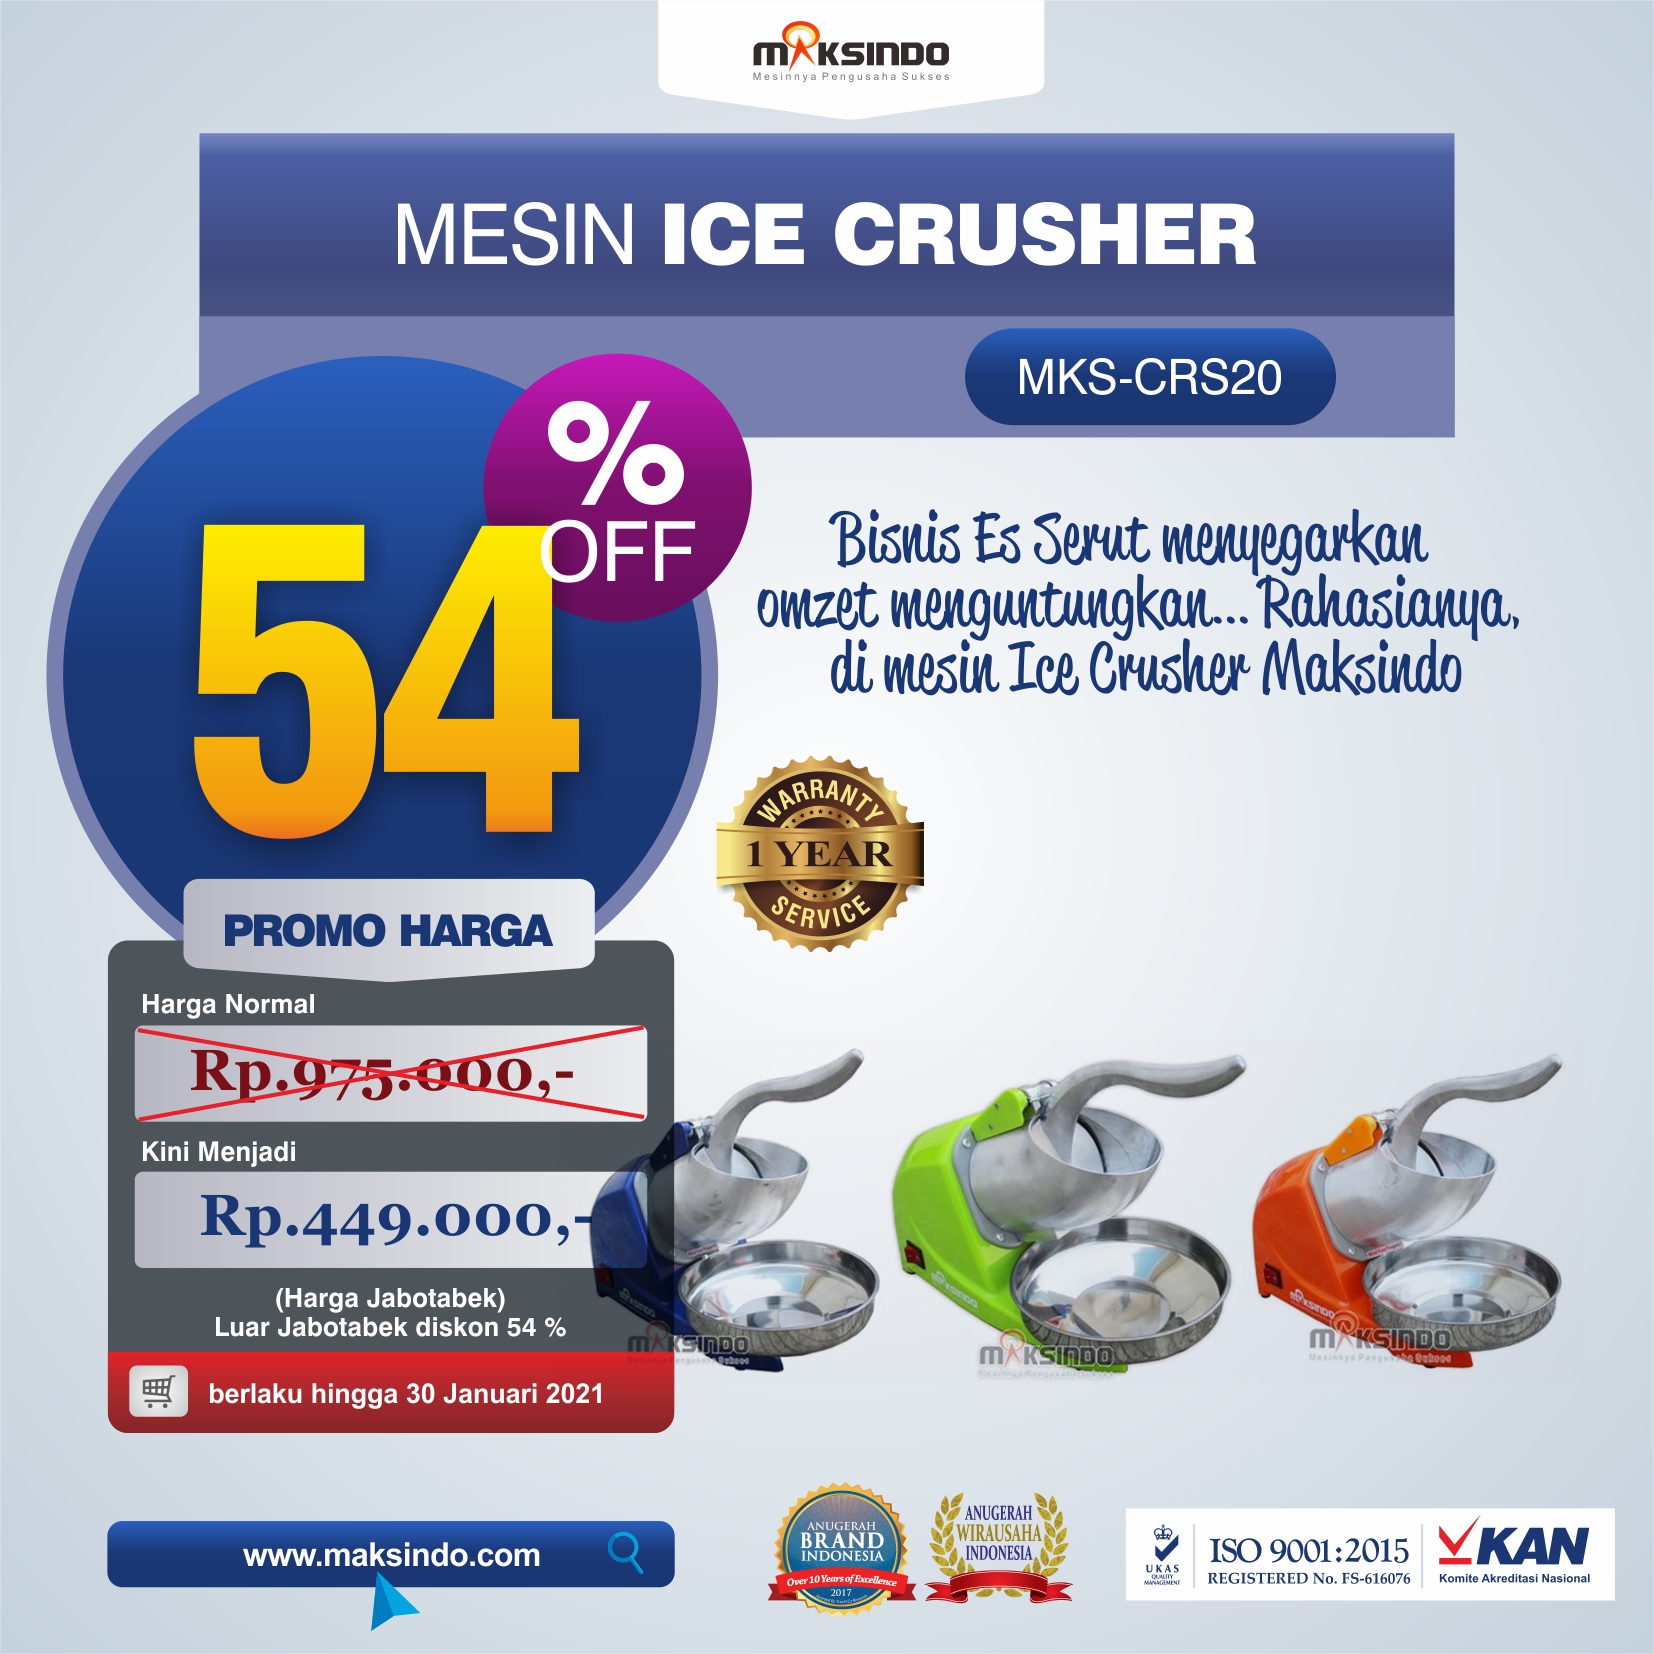 Jual Mesin Ice Crusher MKS-CRS20 di Tangerang